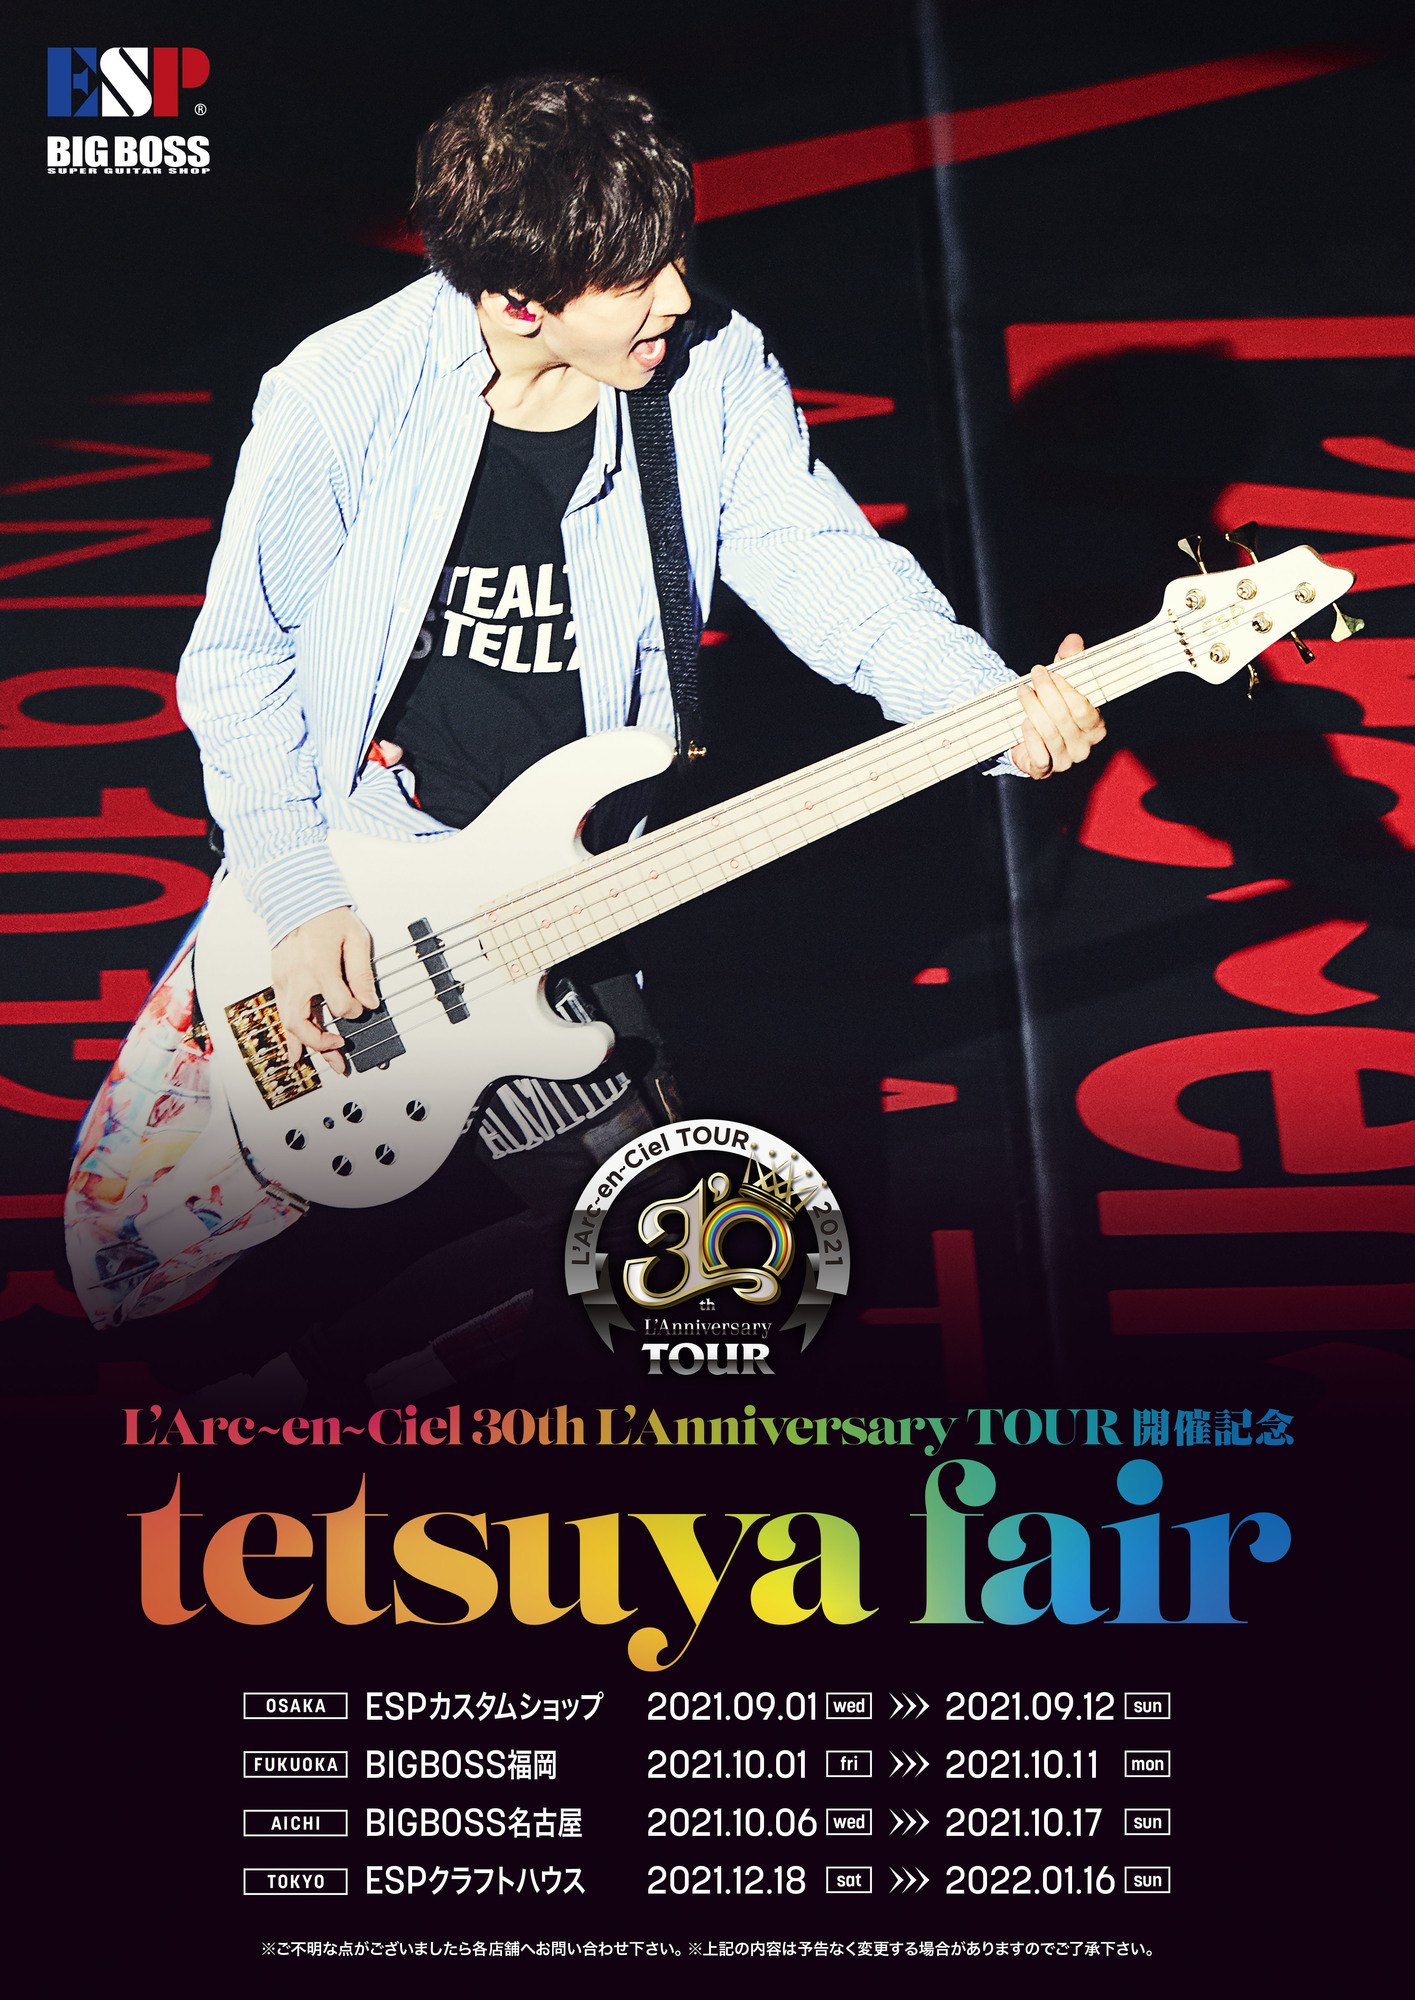 L'Arc-en-Ciel 30th L'Anniversary TOUR 開催記念 tetsuya Fair開催 